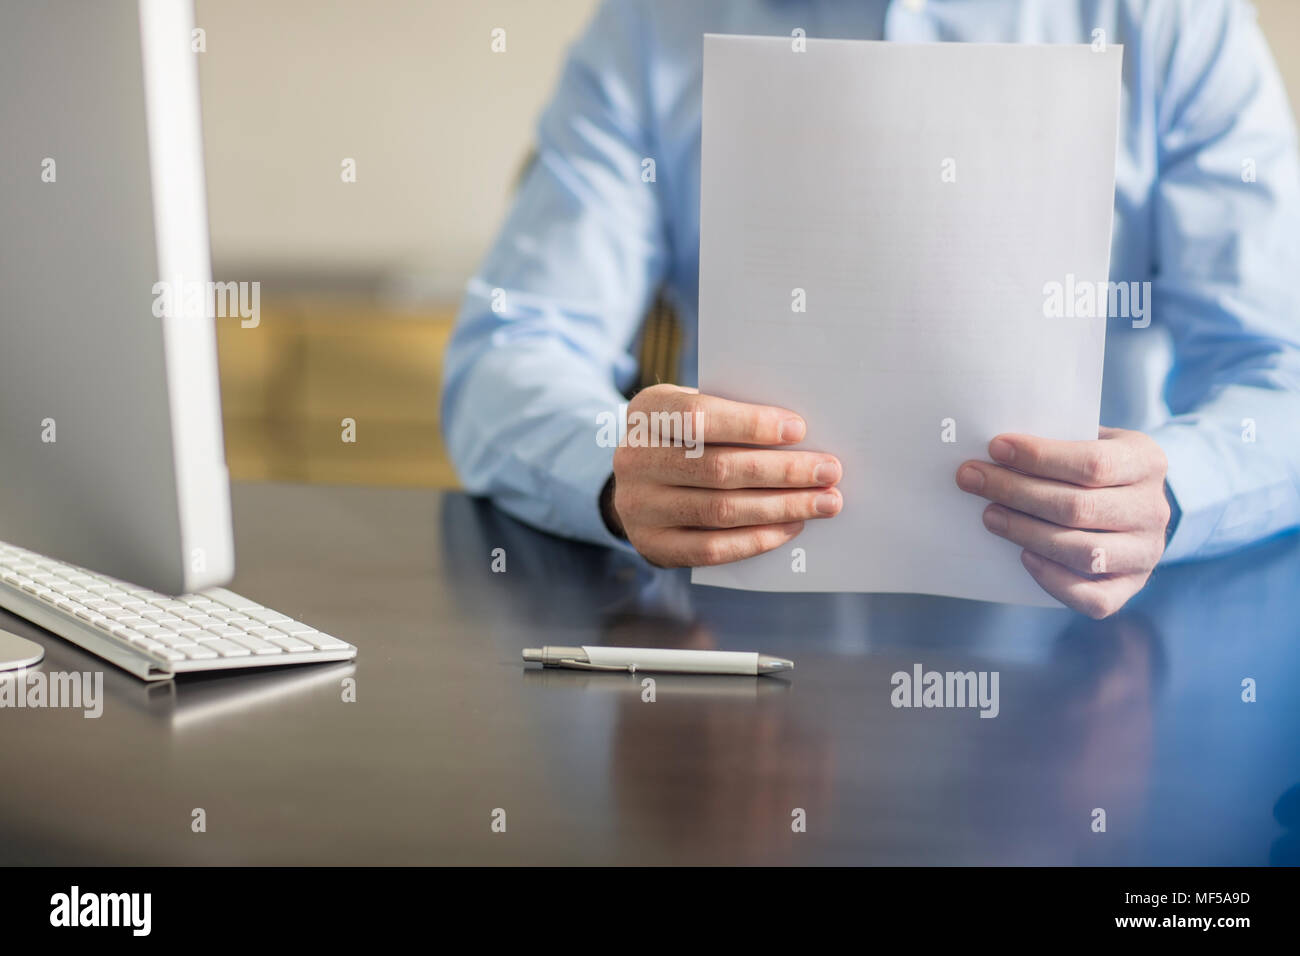 Businessman sitting at office desk avec stylo-bille et documents Banque D'Images